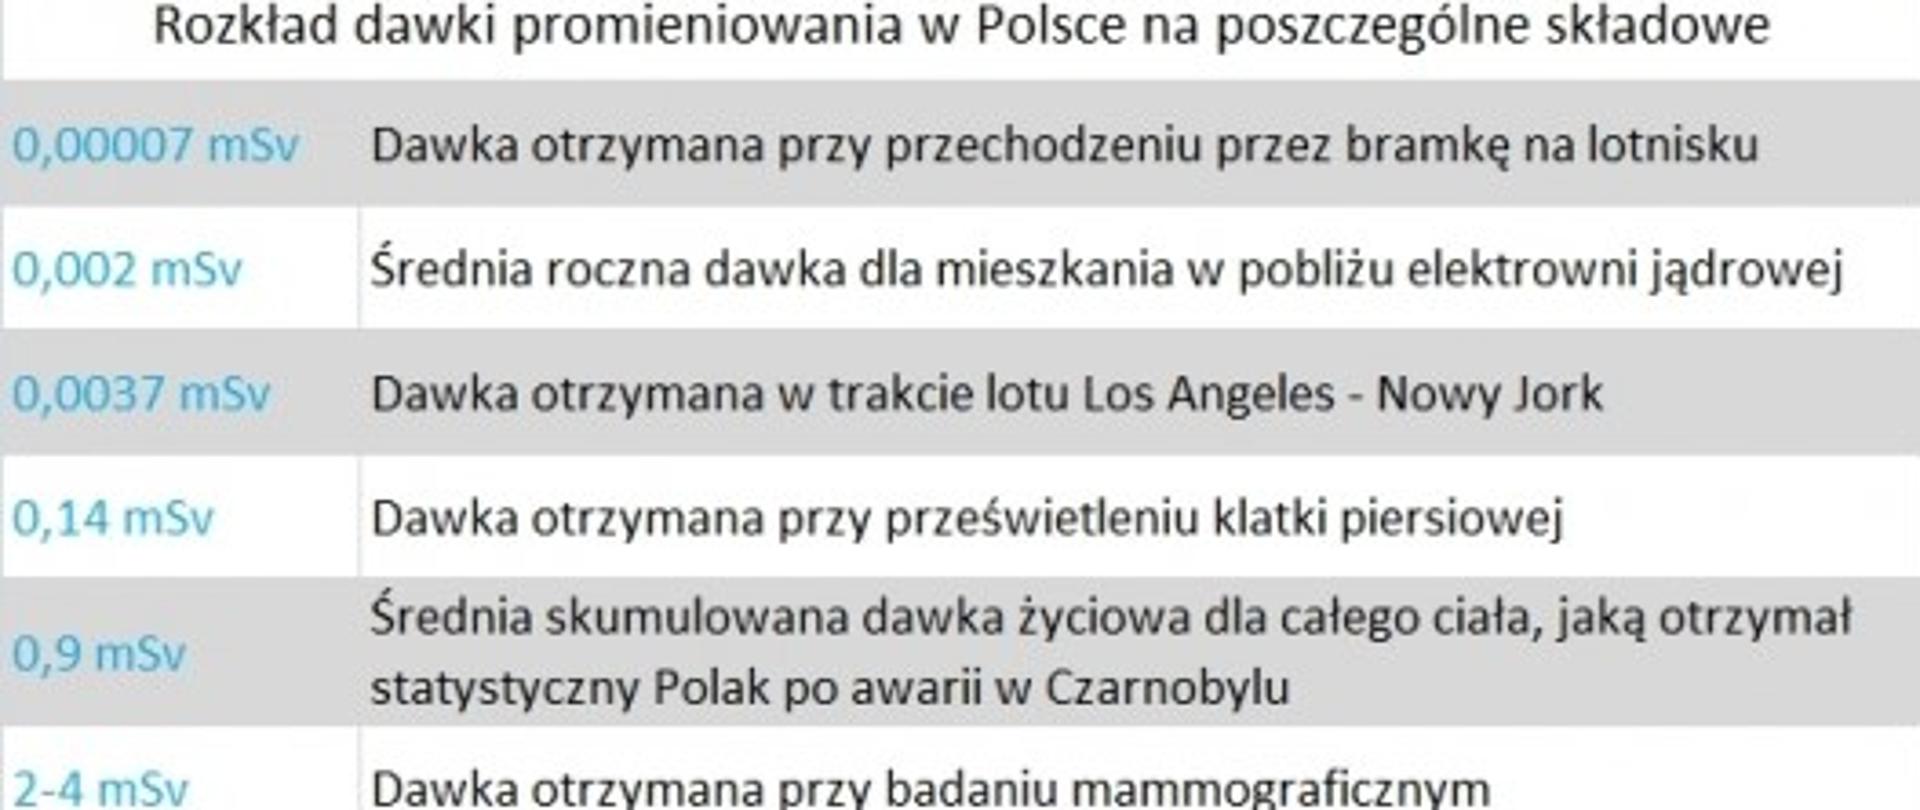 Rozkład dawki promieniowania w Polsce na poszczególne składowe 